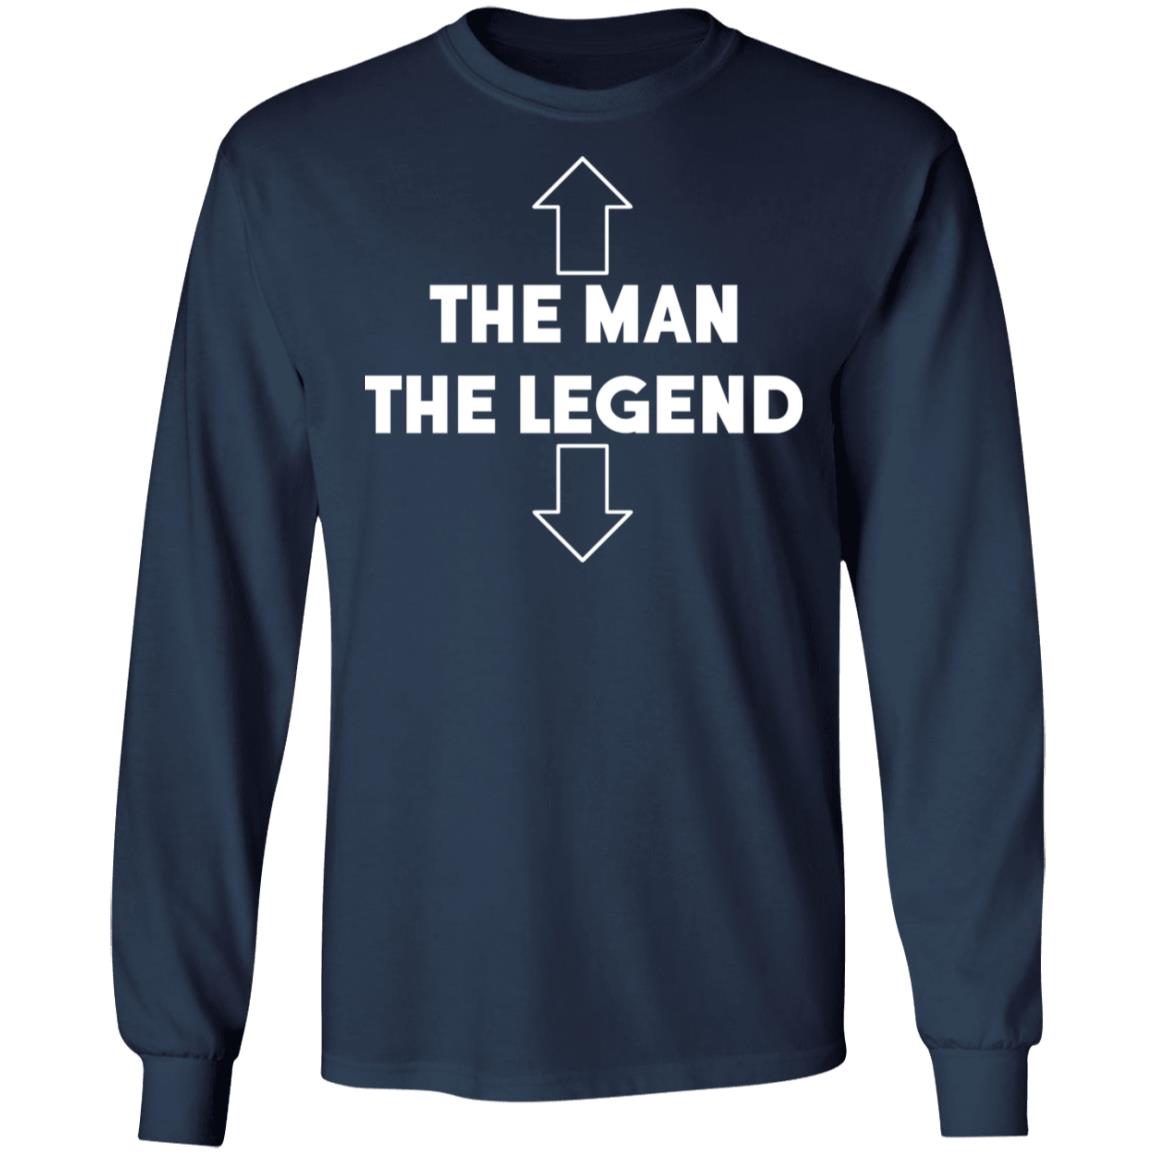 The Man The Legend Shirt | Teemoonley.com